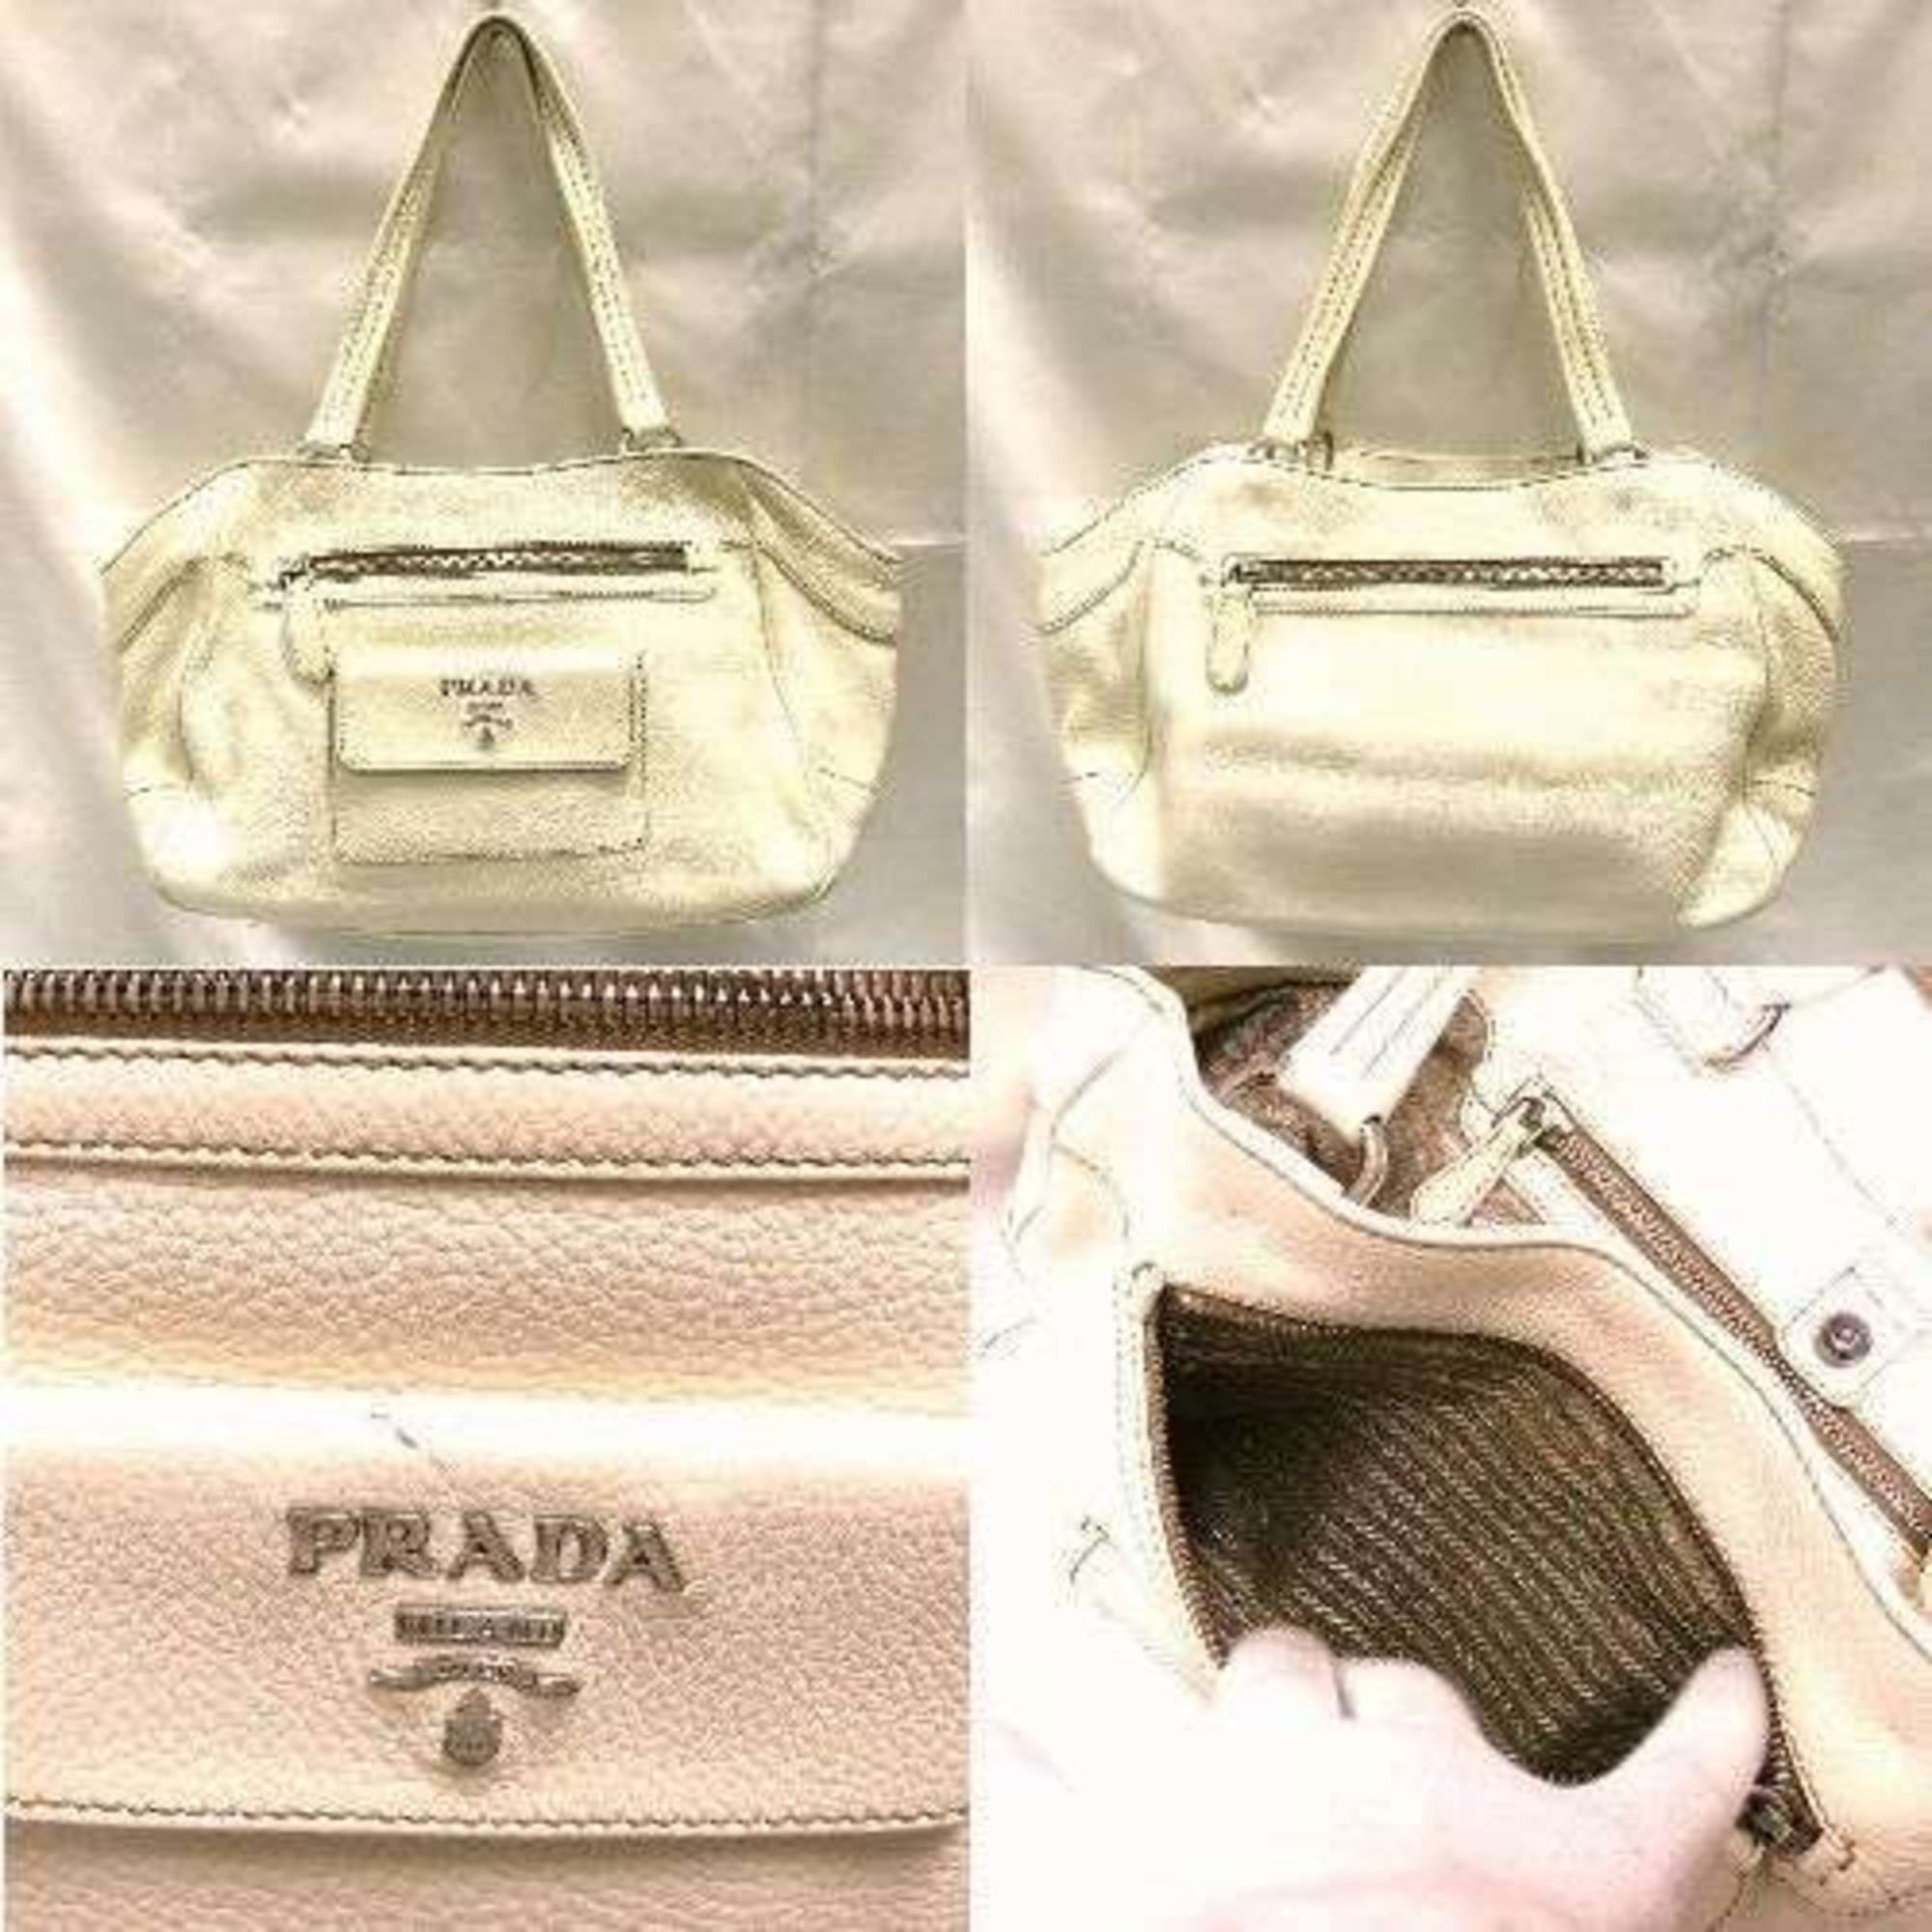 PRADA Prada shoulder bag ivory leather